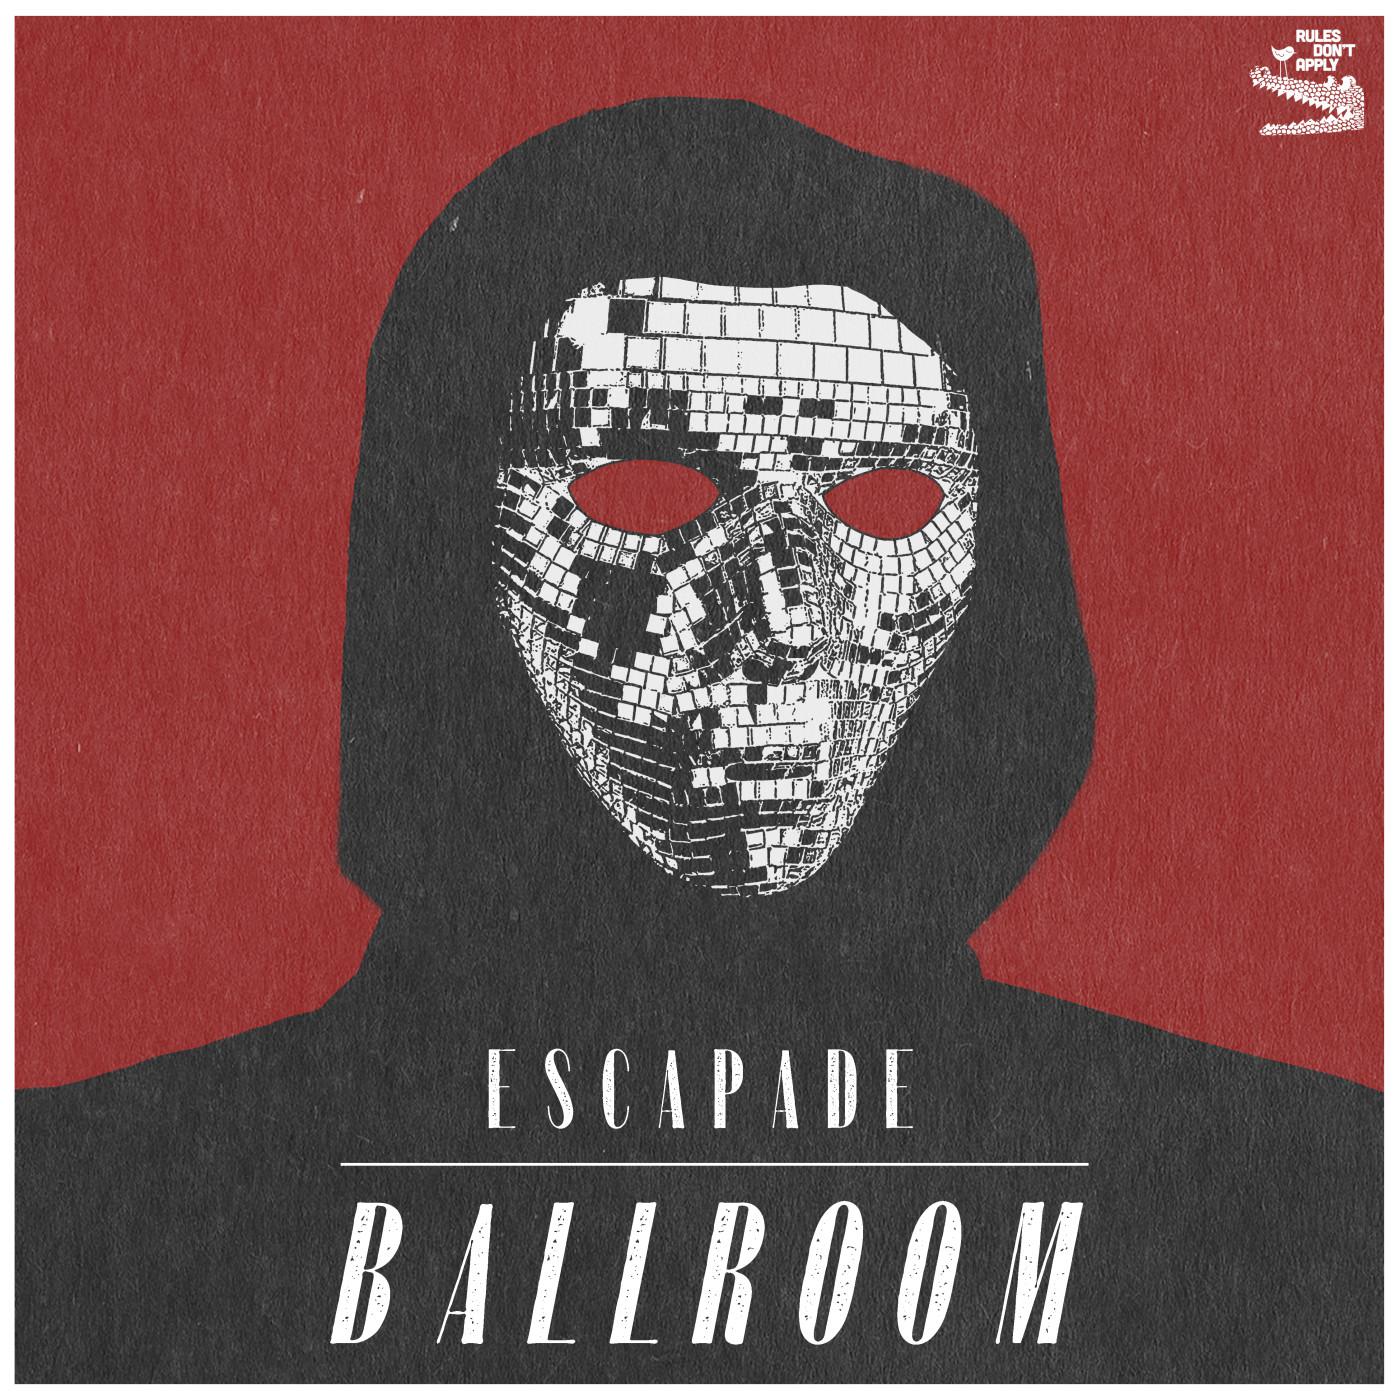 Escapade - Ballroom